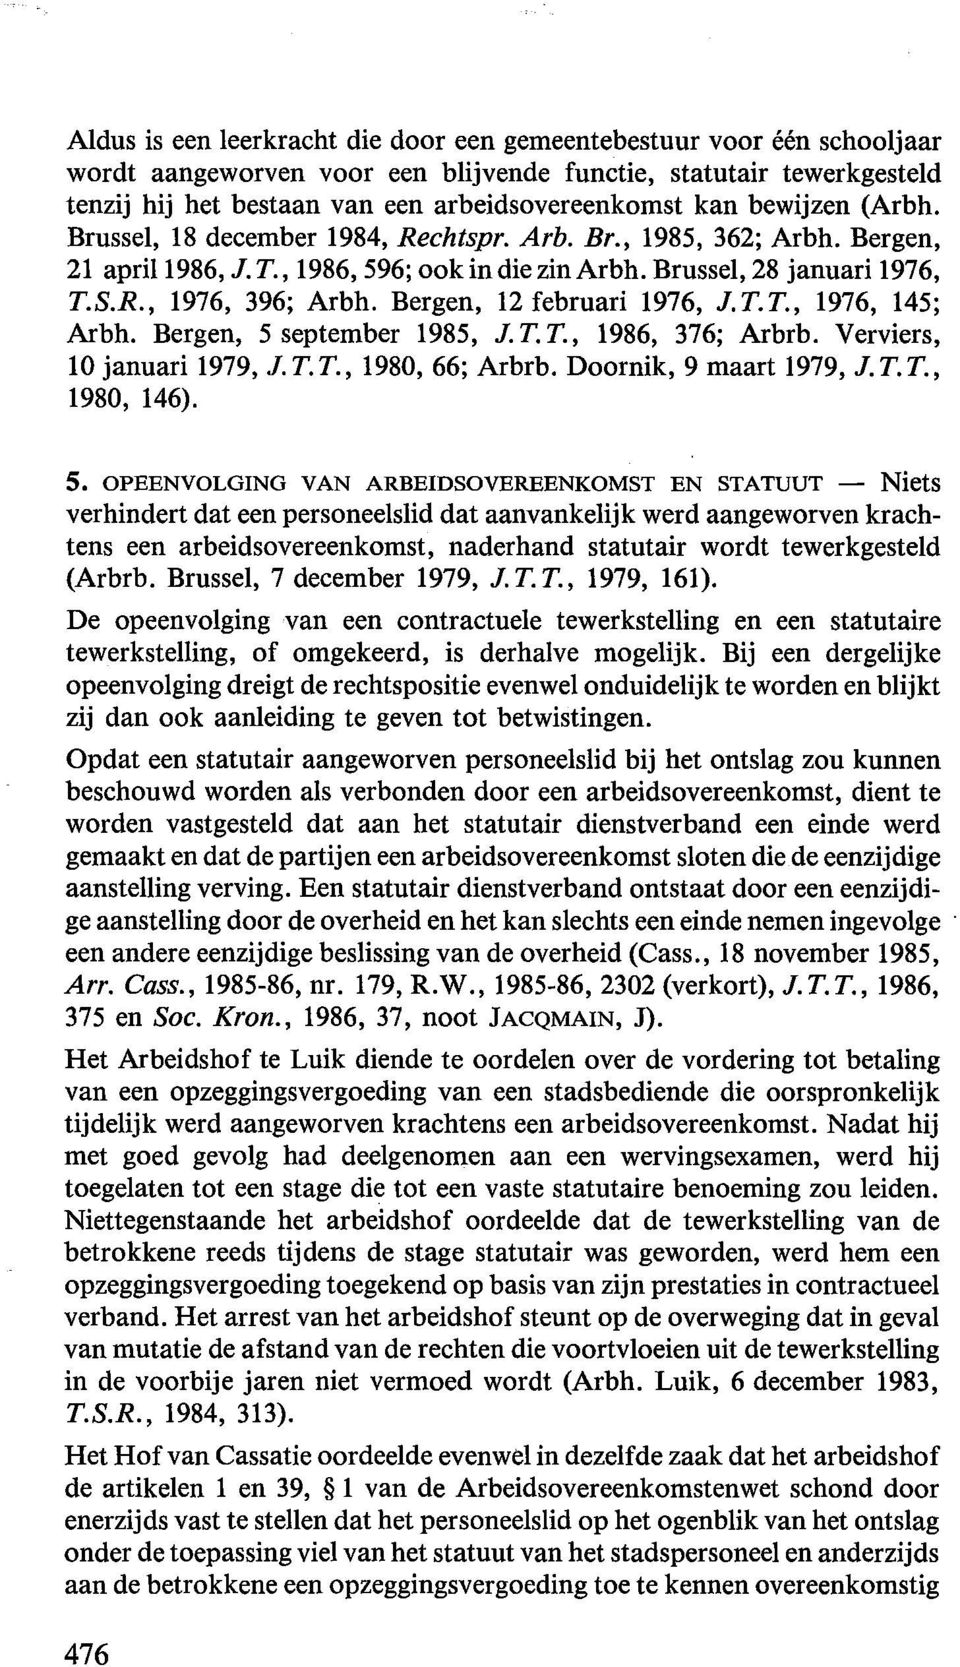 Bergen, 12 februari 1976, J. T. T., 1976, 145; Arbh. Bergen, 5 september 1985, J.T.T., 1986, 376; Arbrb. Verviers, 10 januari 1979, J. T. T., 1980, 66; Arbrb. Doornik, 9 maart 1979, J. T. T., 1980, 146).